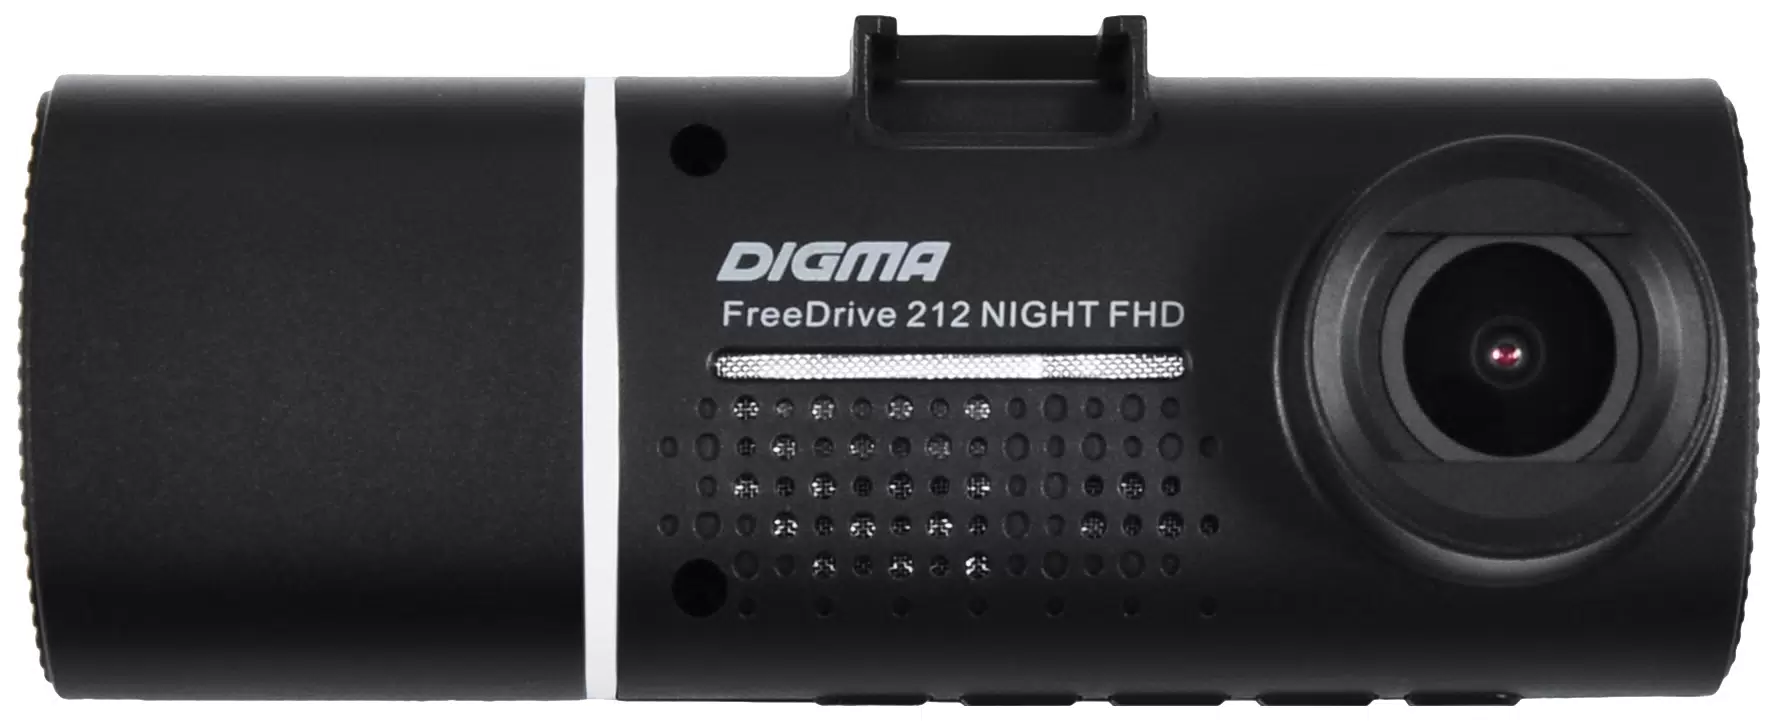 Видеорегистратор Digma FreeDrive 212 NIGHT FHD,  черный - VLARNIKA в Луганске